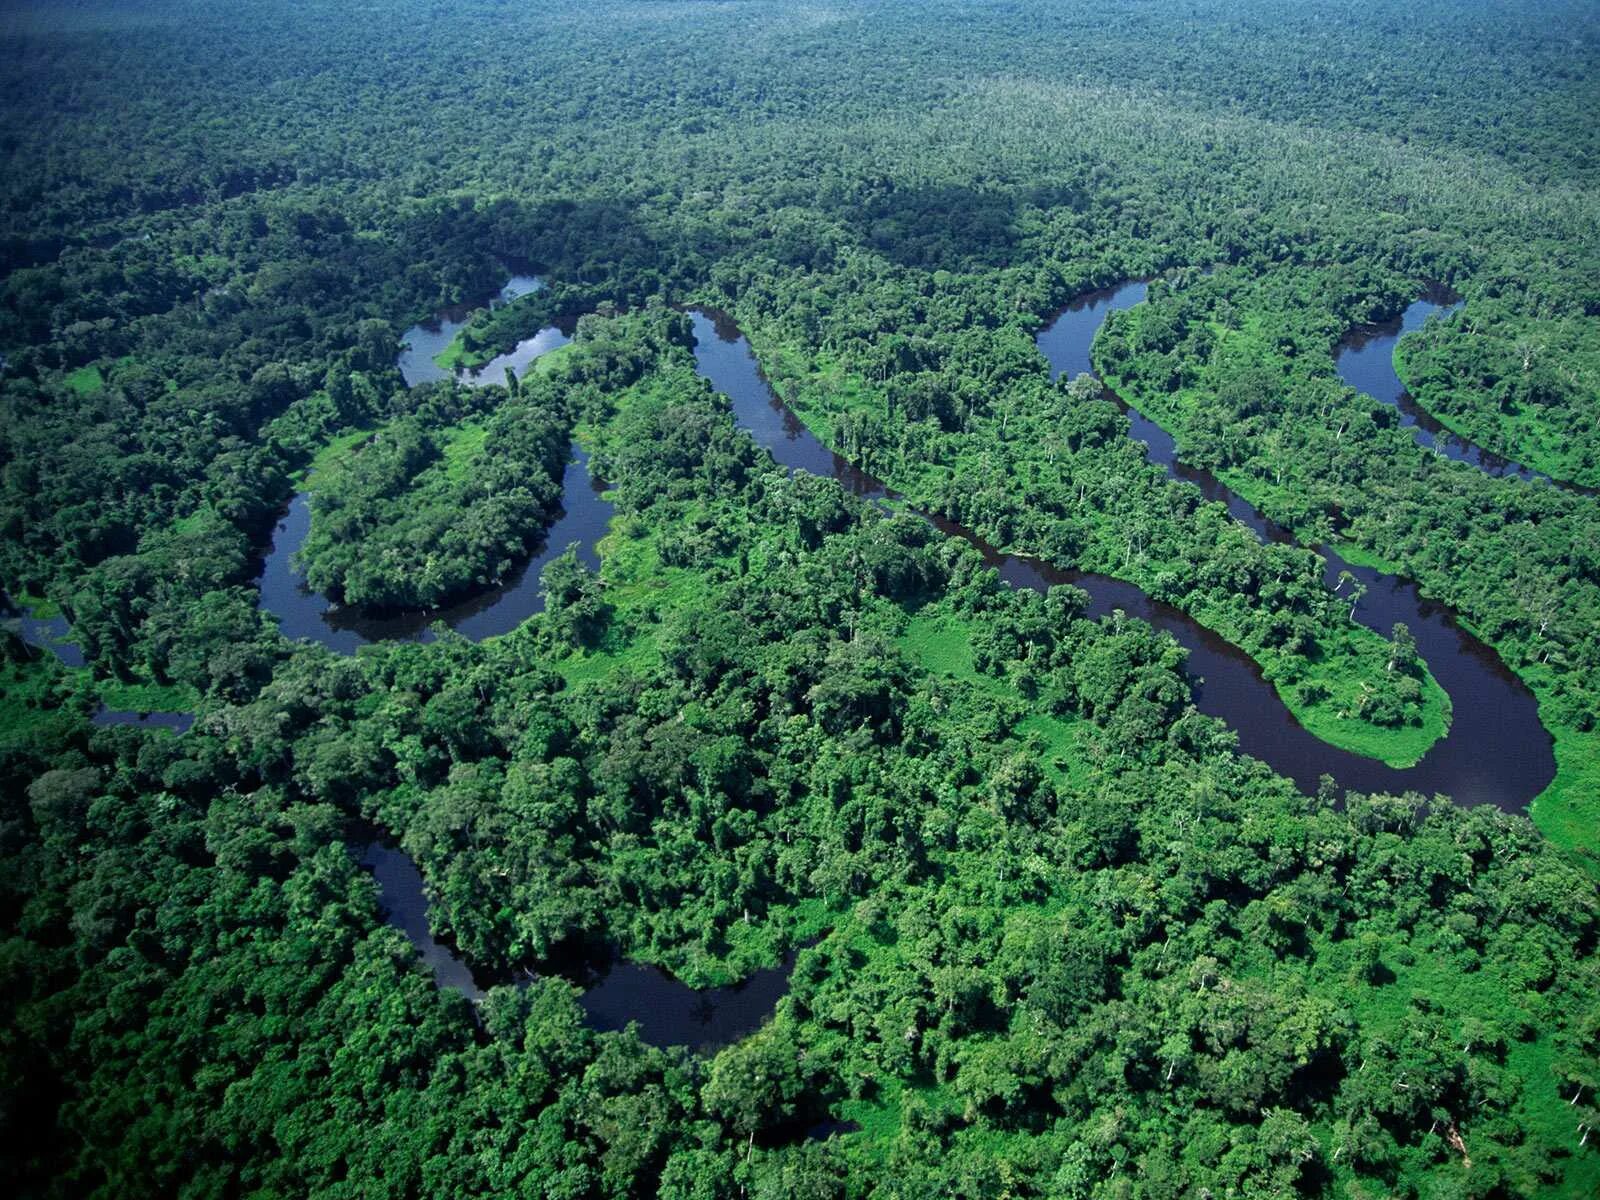 Amazon borneo congo. Бразилия леса Амазонии. Тропические леса амазонки в Бразилии. Дождливые леса Амазонии. Река Амазонка в Бразилии.